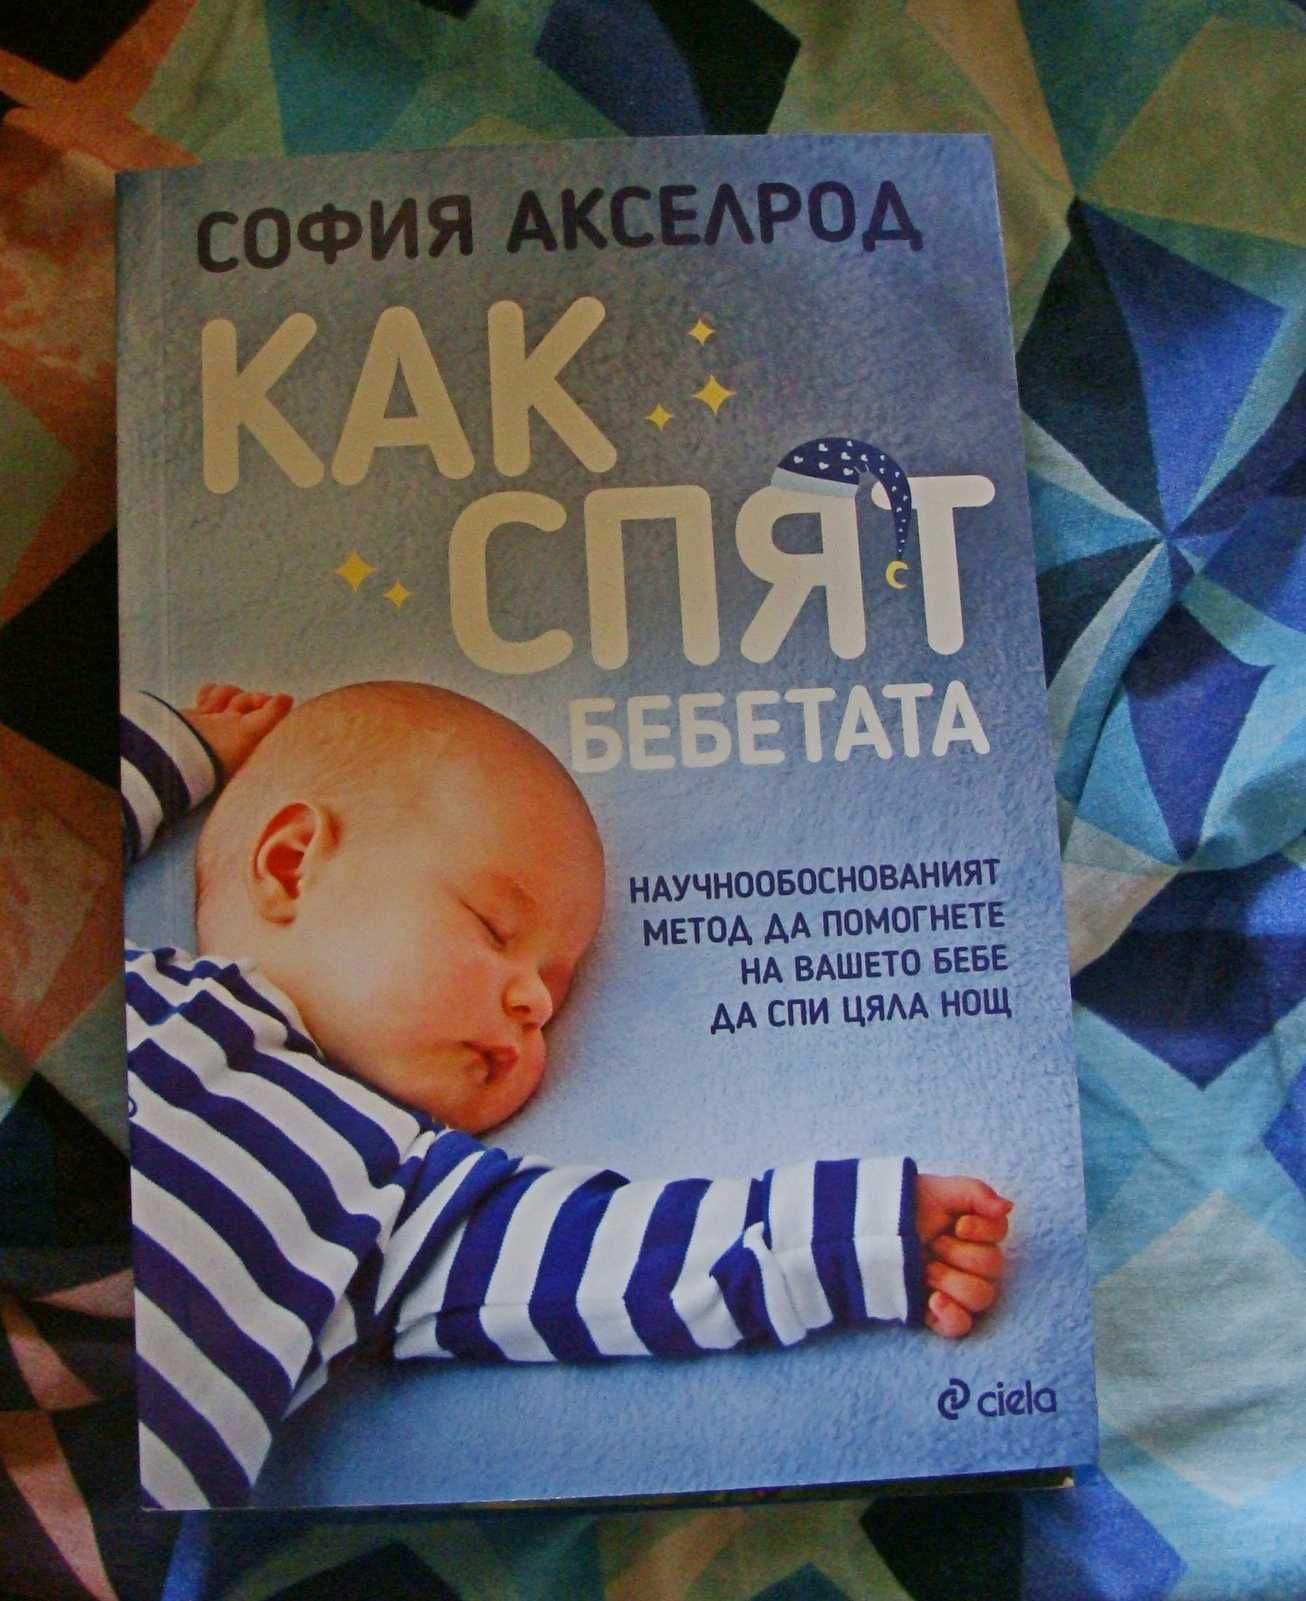 Нова "Как спят бебетата"
"150 упражнения по метода Монтесори у дома